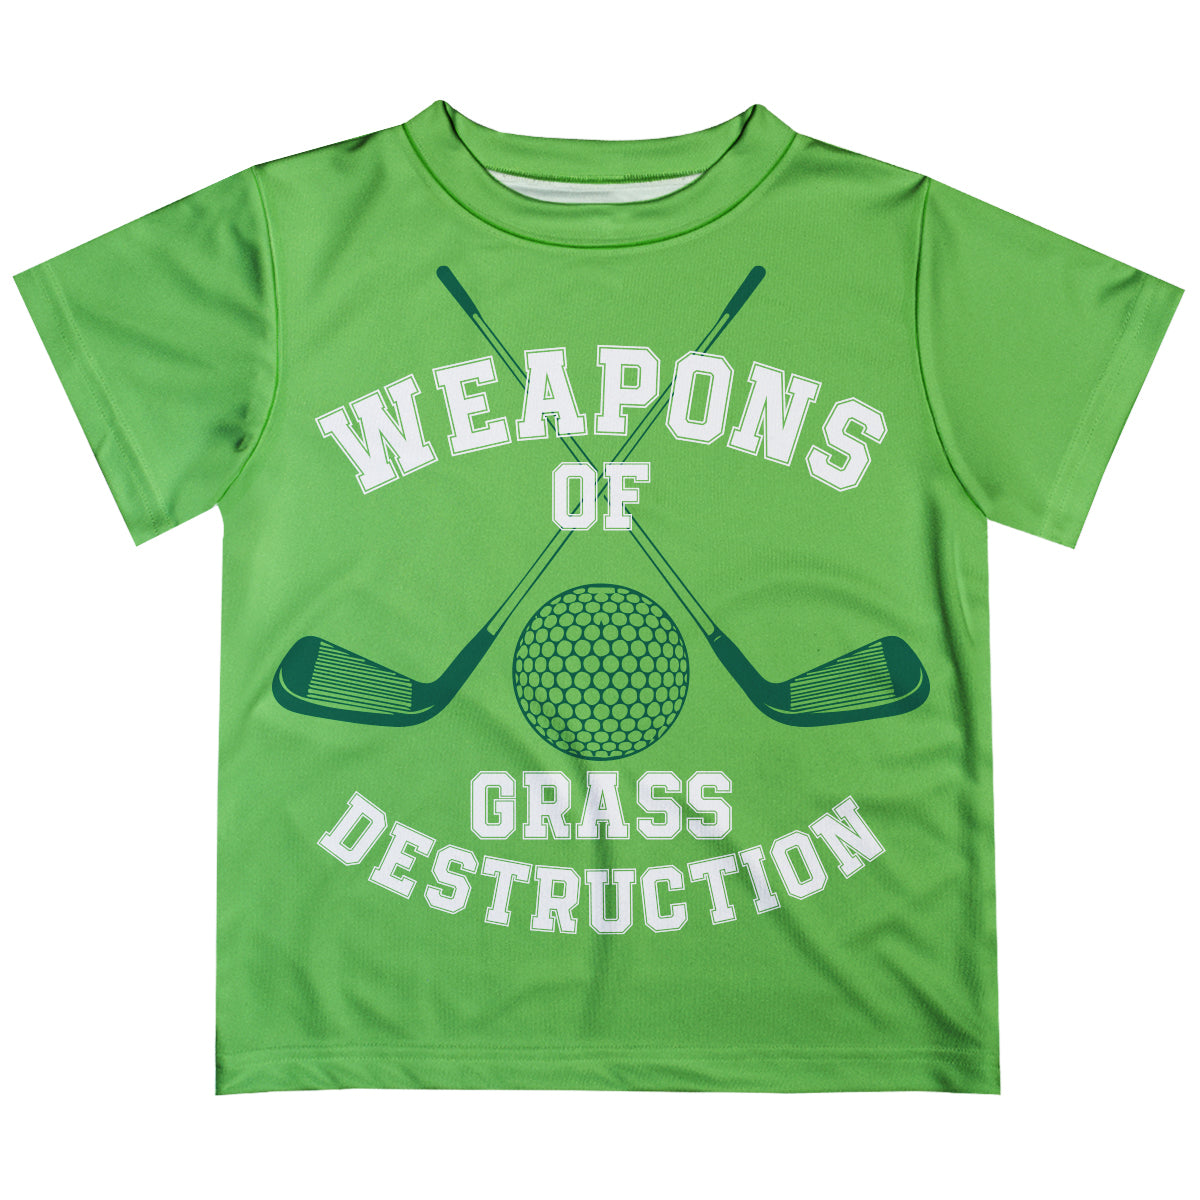 Weapons Of Grass Destruction Green Short Sleeve Tee Shirt